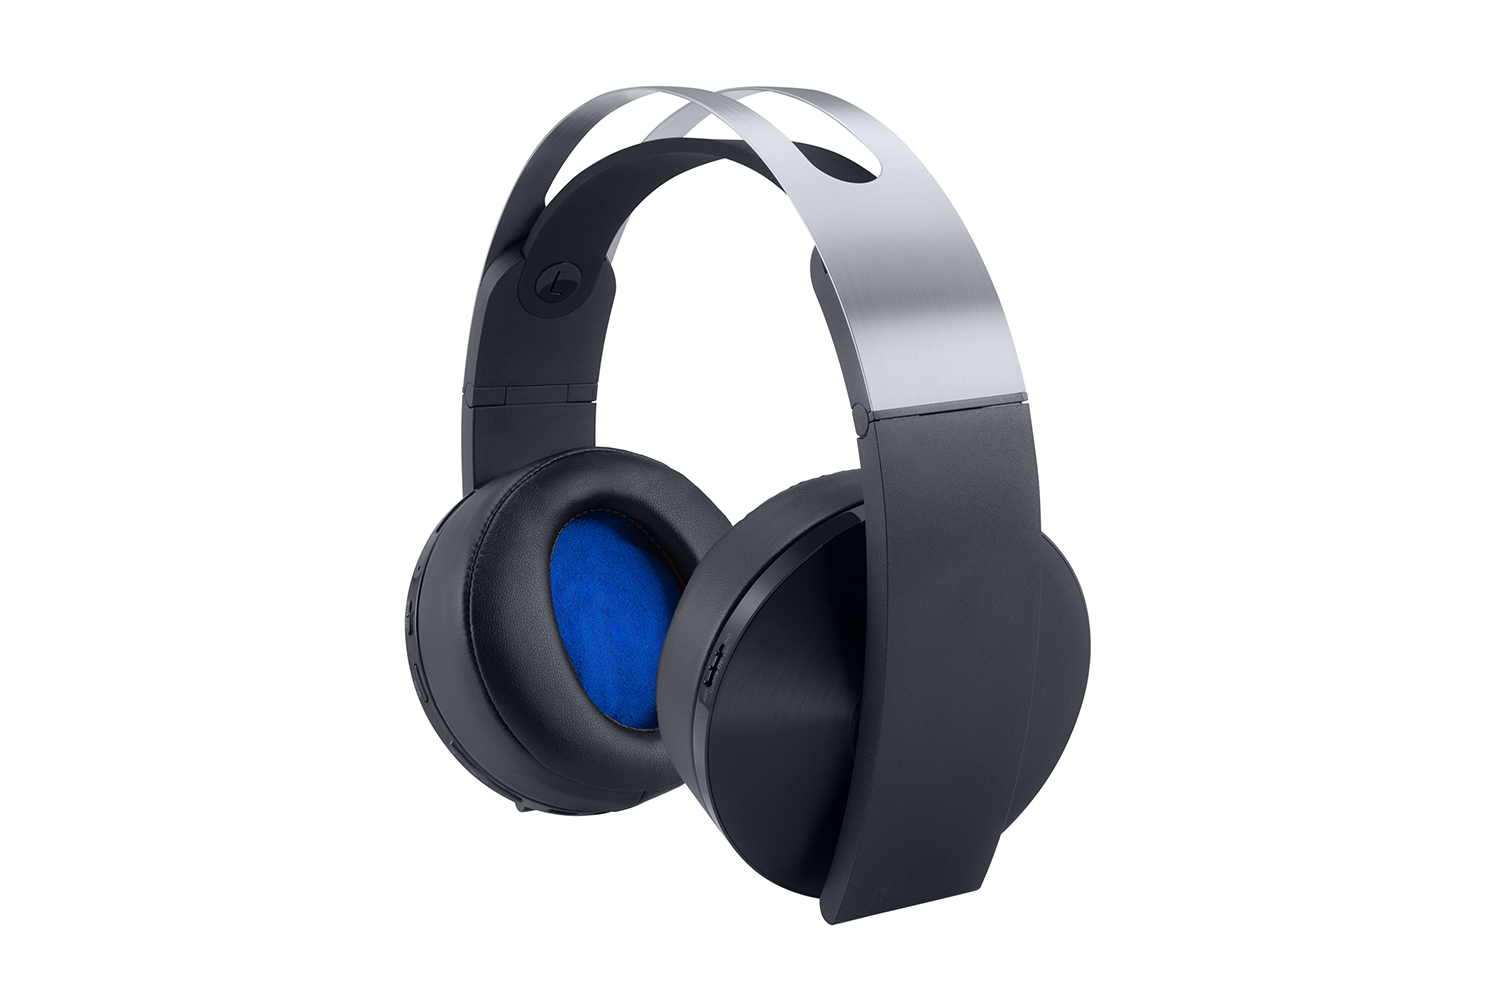 comunicación Fabricación Mucho Análisis del nuevo Platinum Wireless Headset de Sony | Eurogamer.es